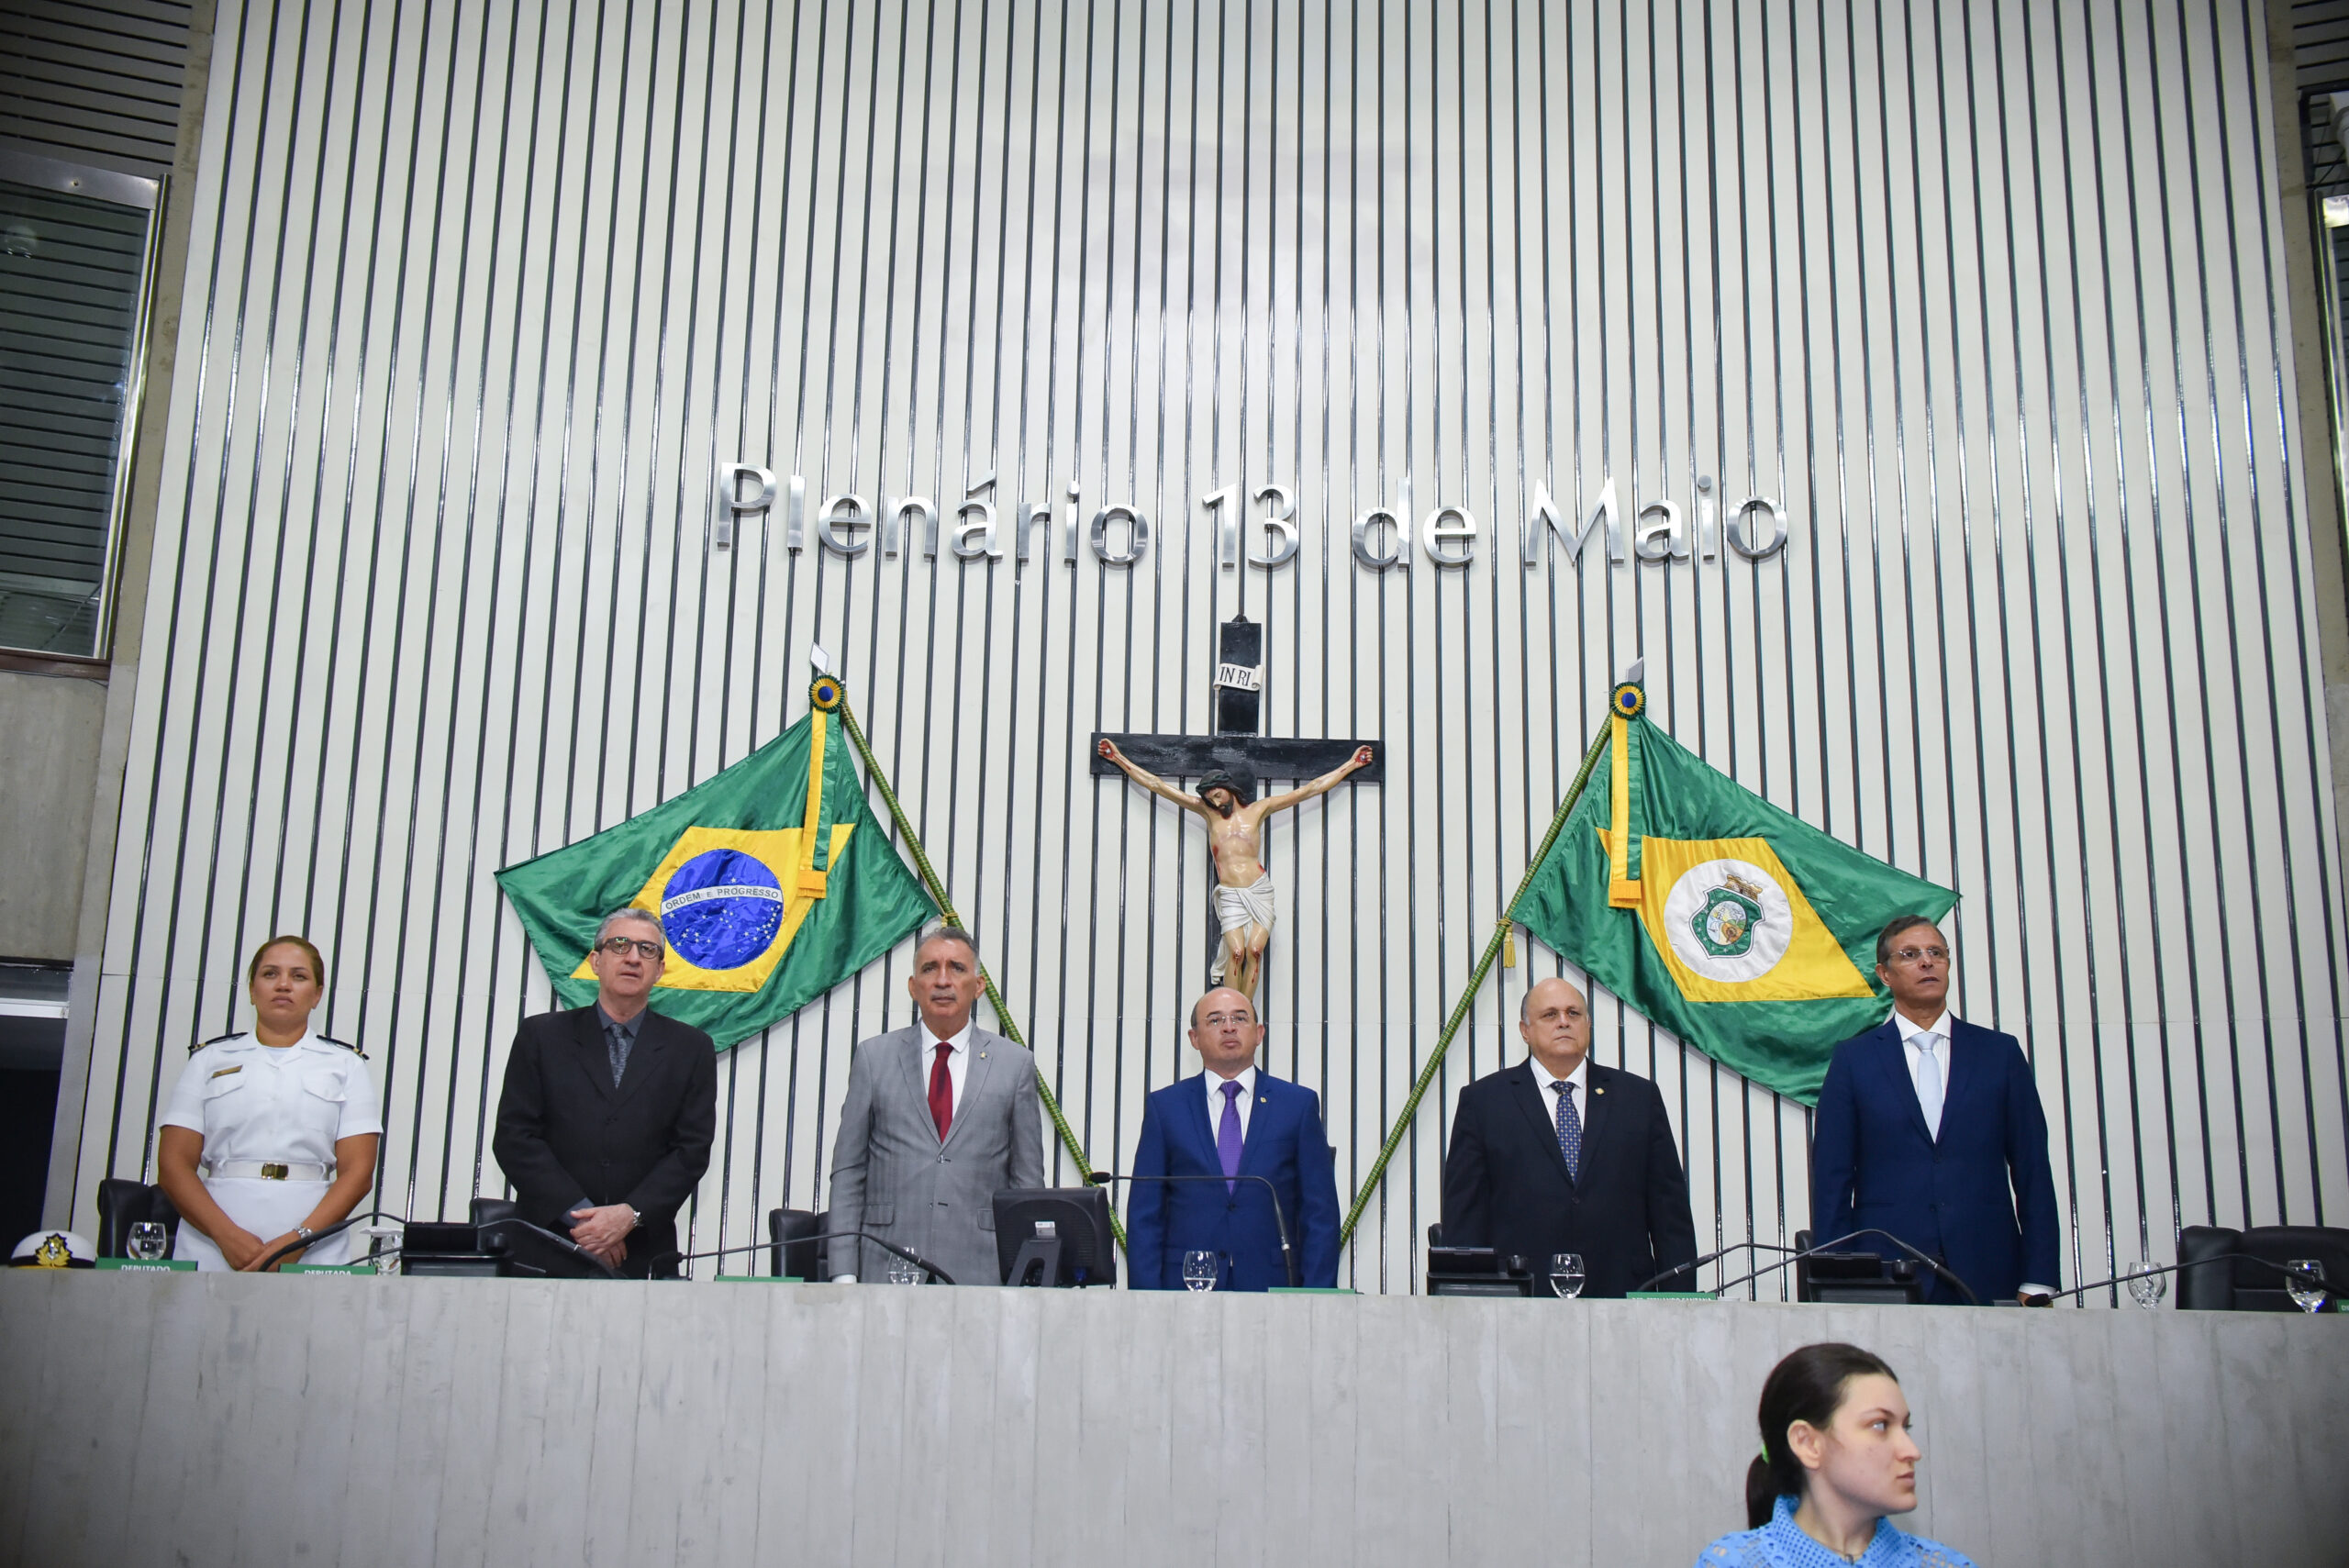 Representantes Comerciais são homenageados em Sessão Solene na Assembleia Legislativa do Estado do Ceará